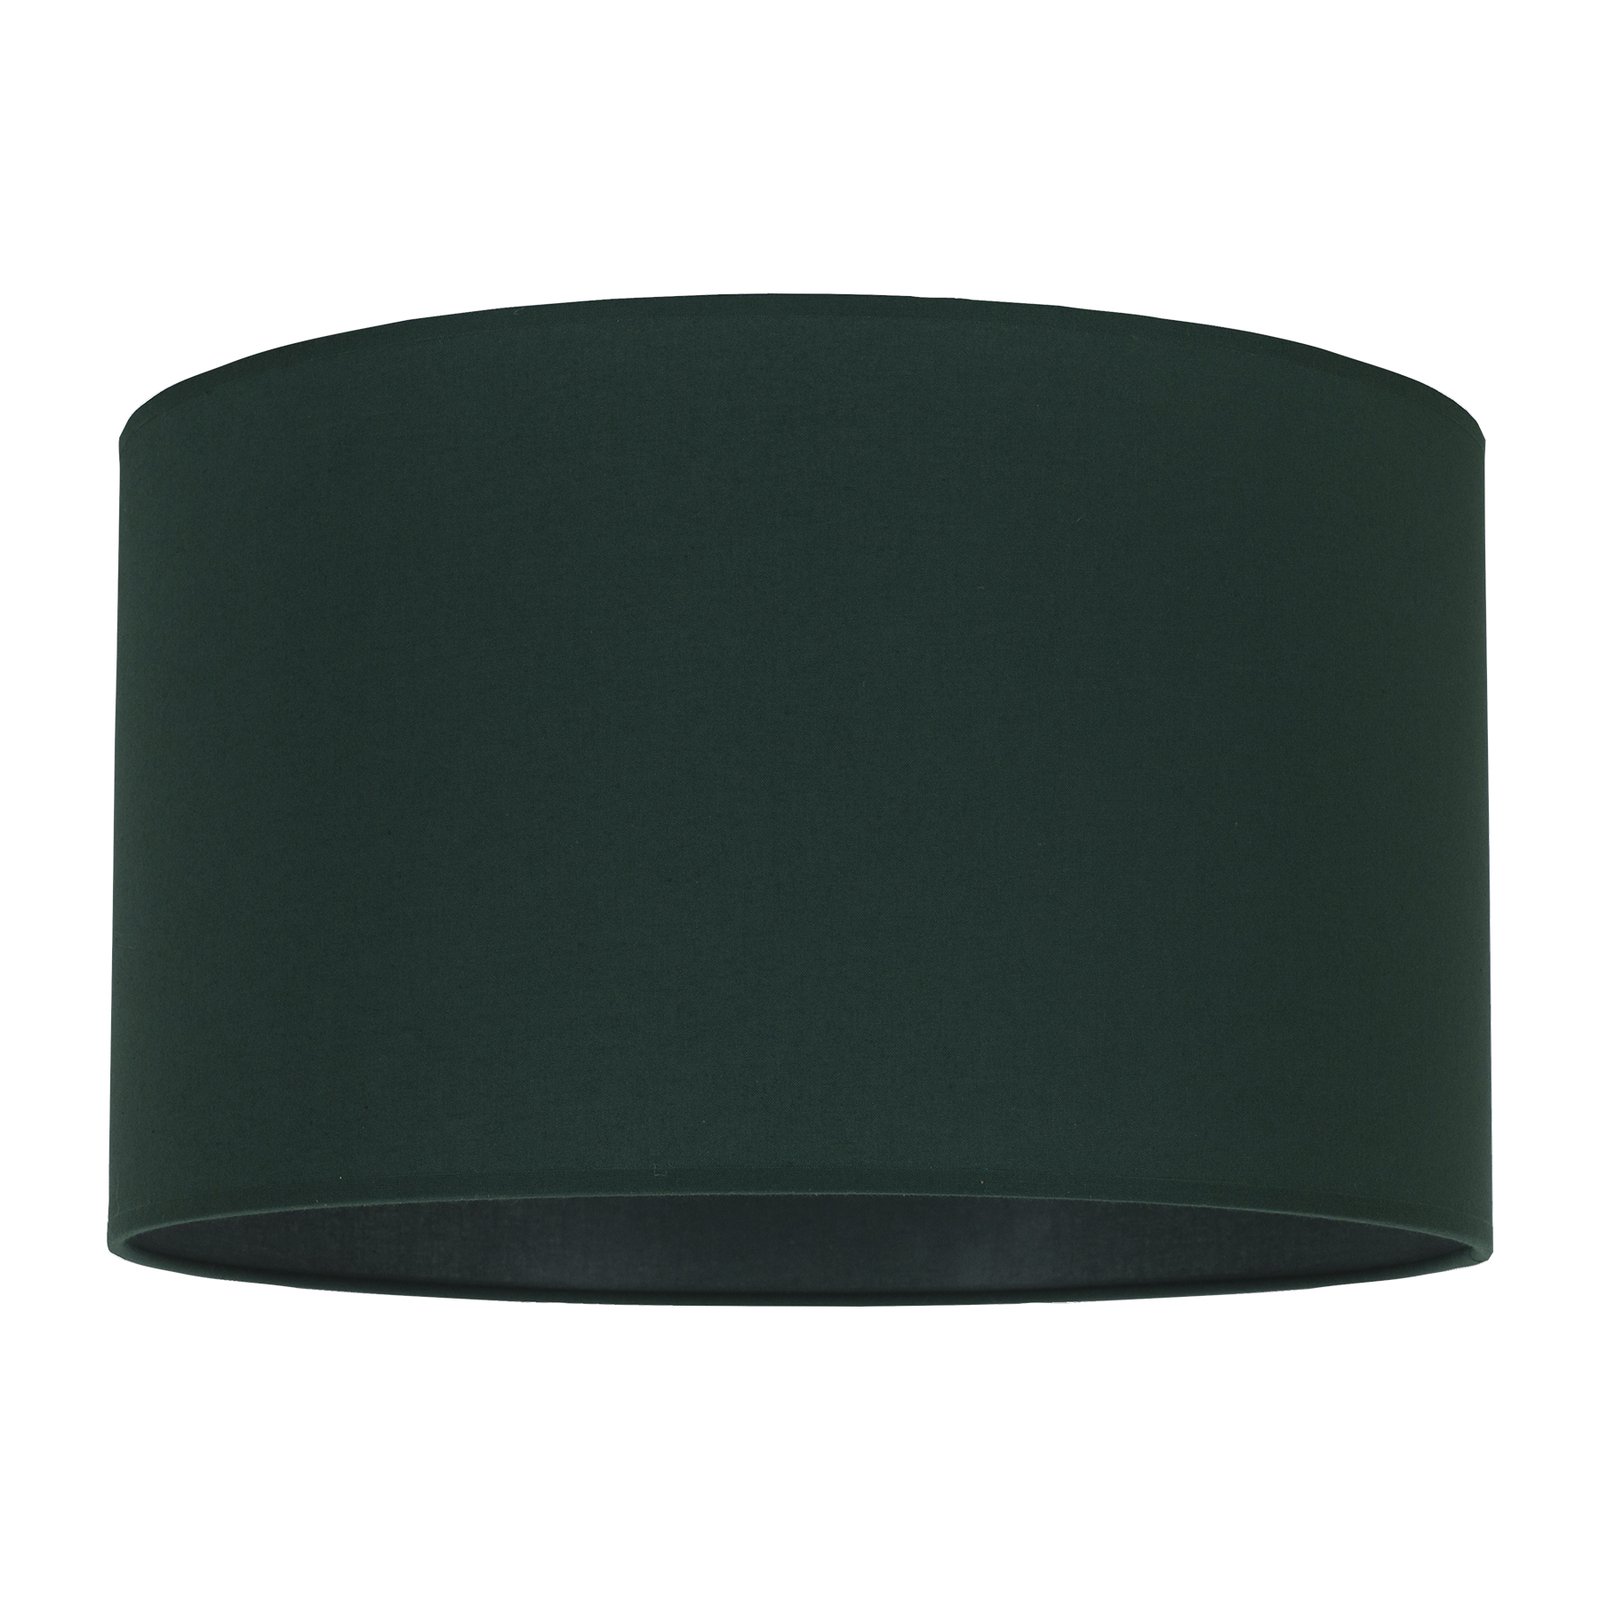 Klosz lampy Roller, zielony Ø 40 cm wysokość 22 cm